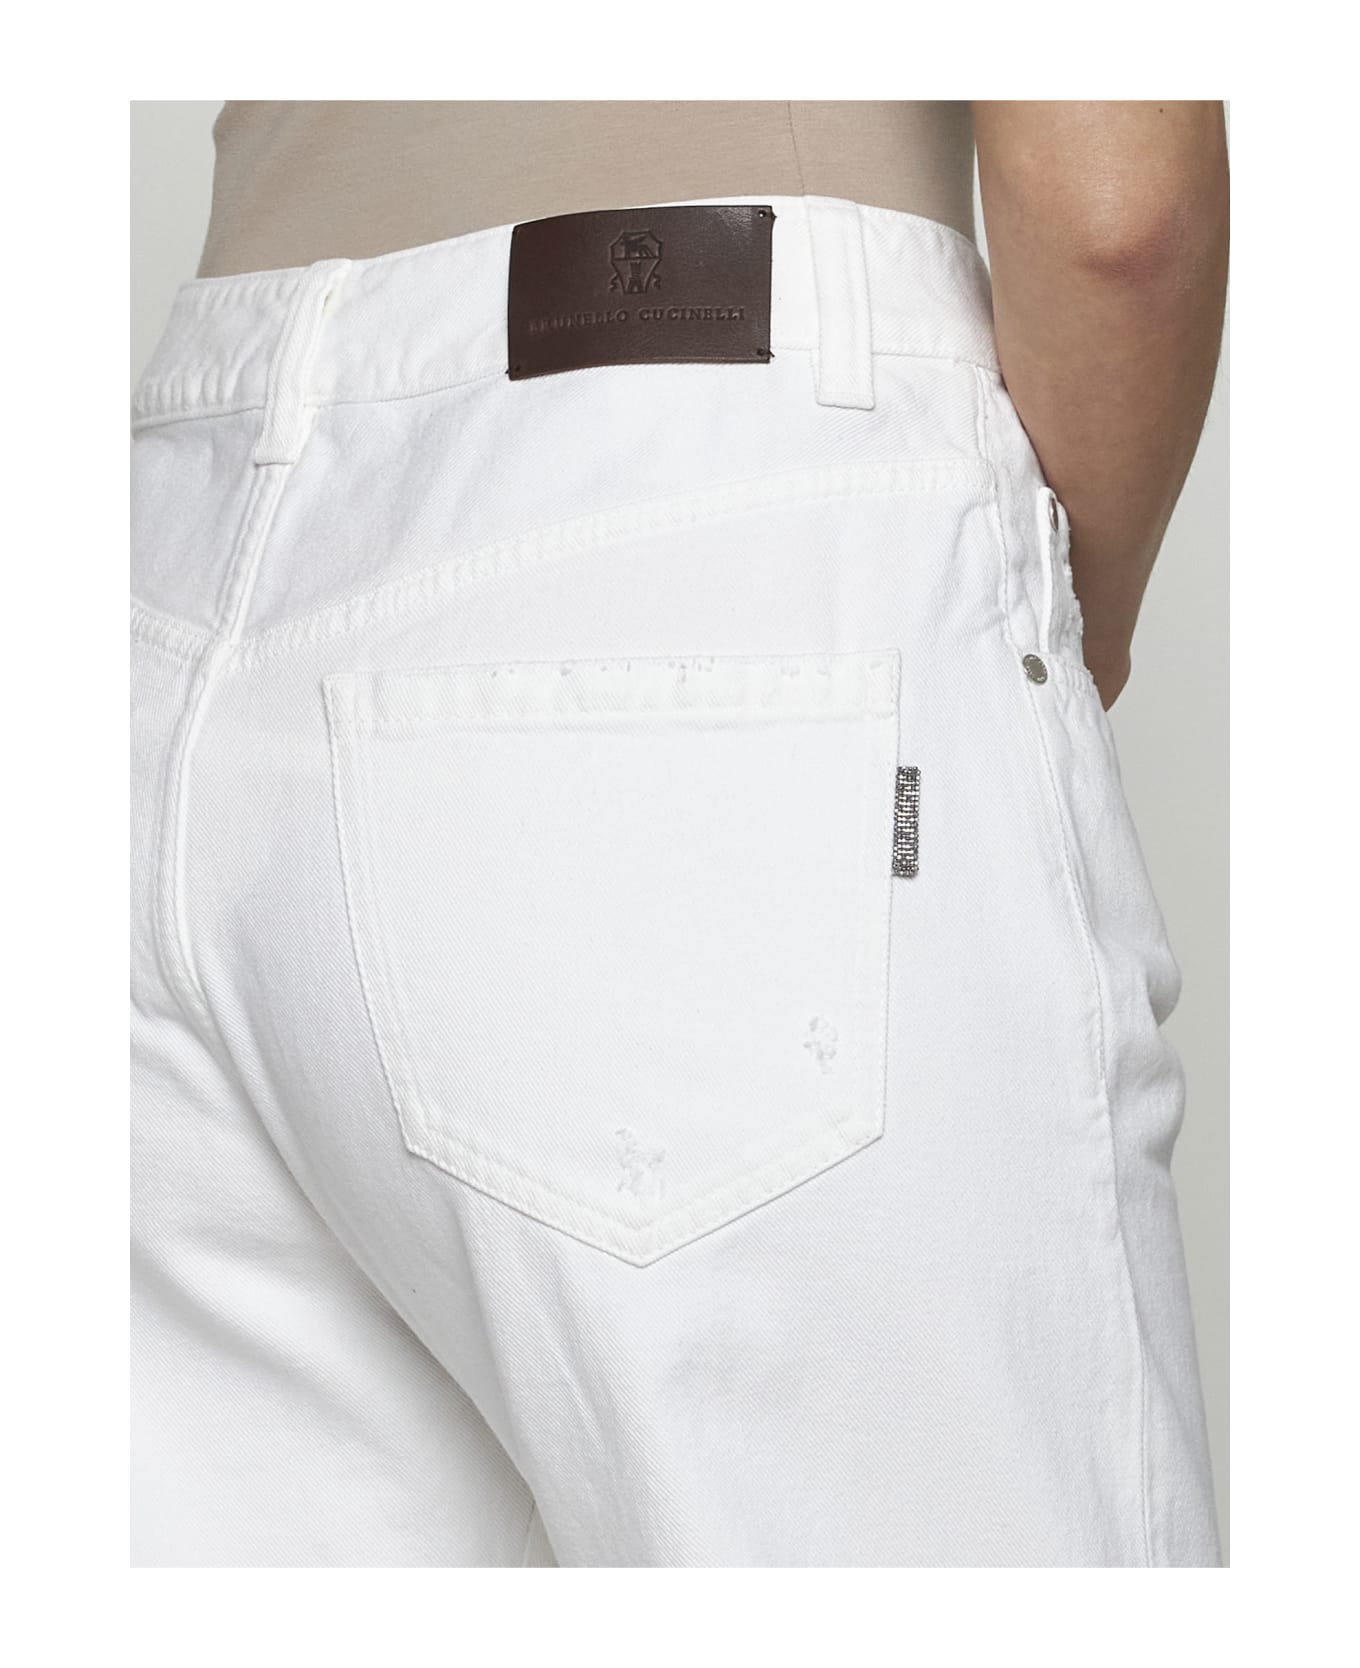 Brunello Cucinelli Jeans - White